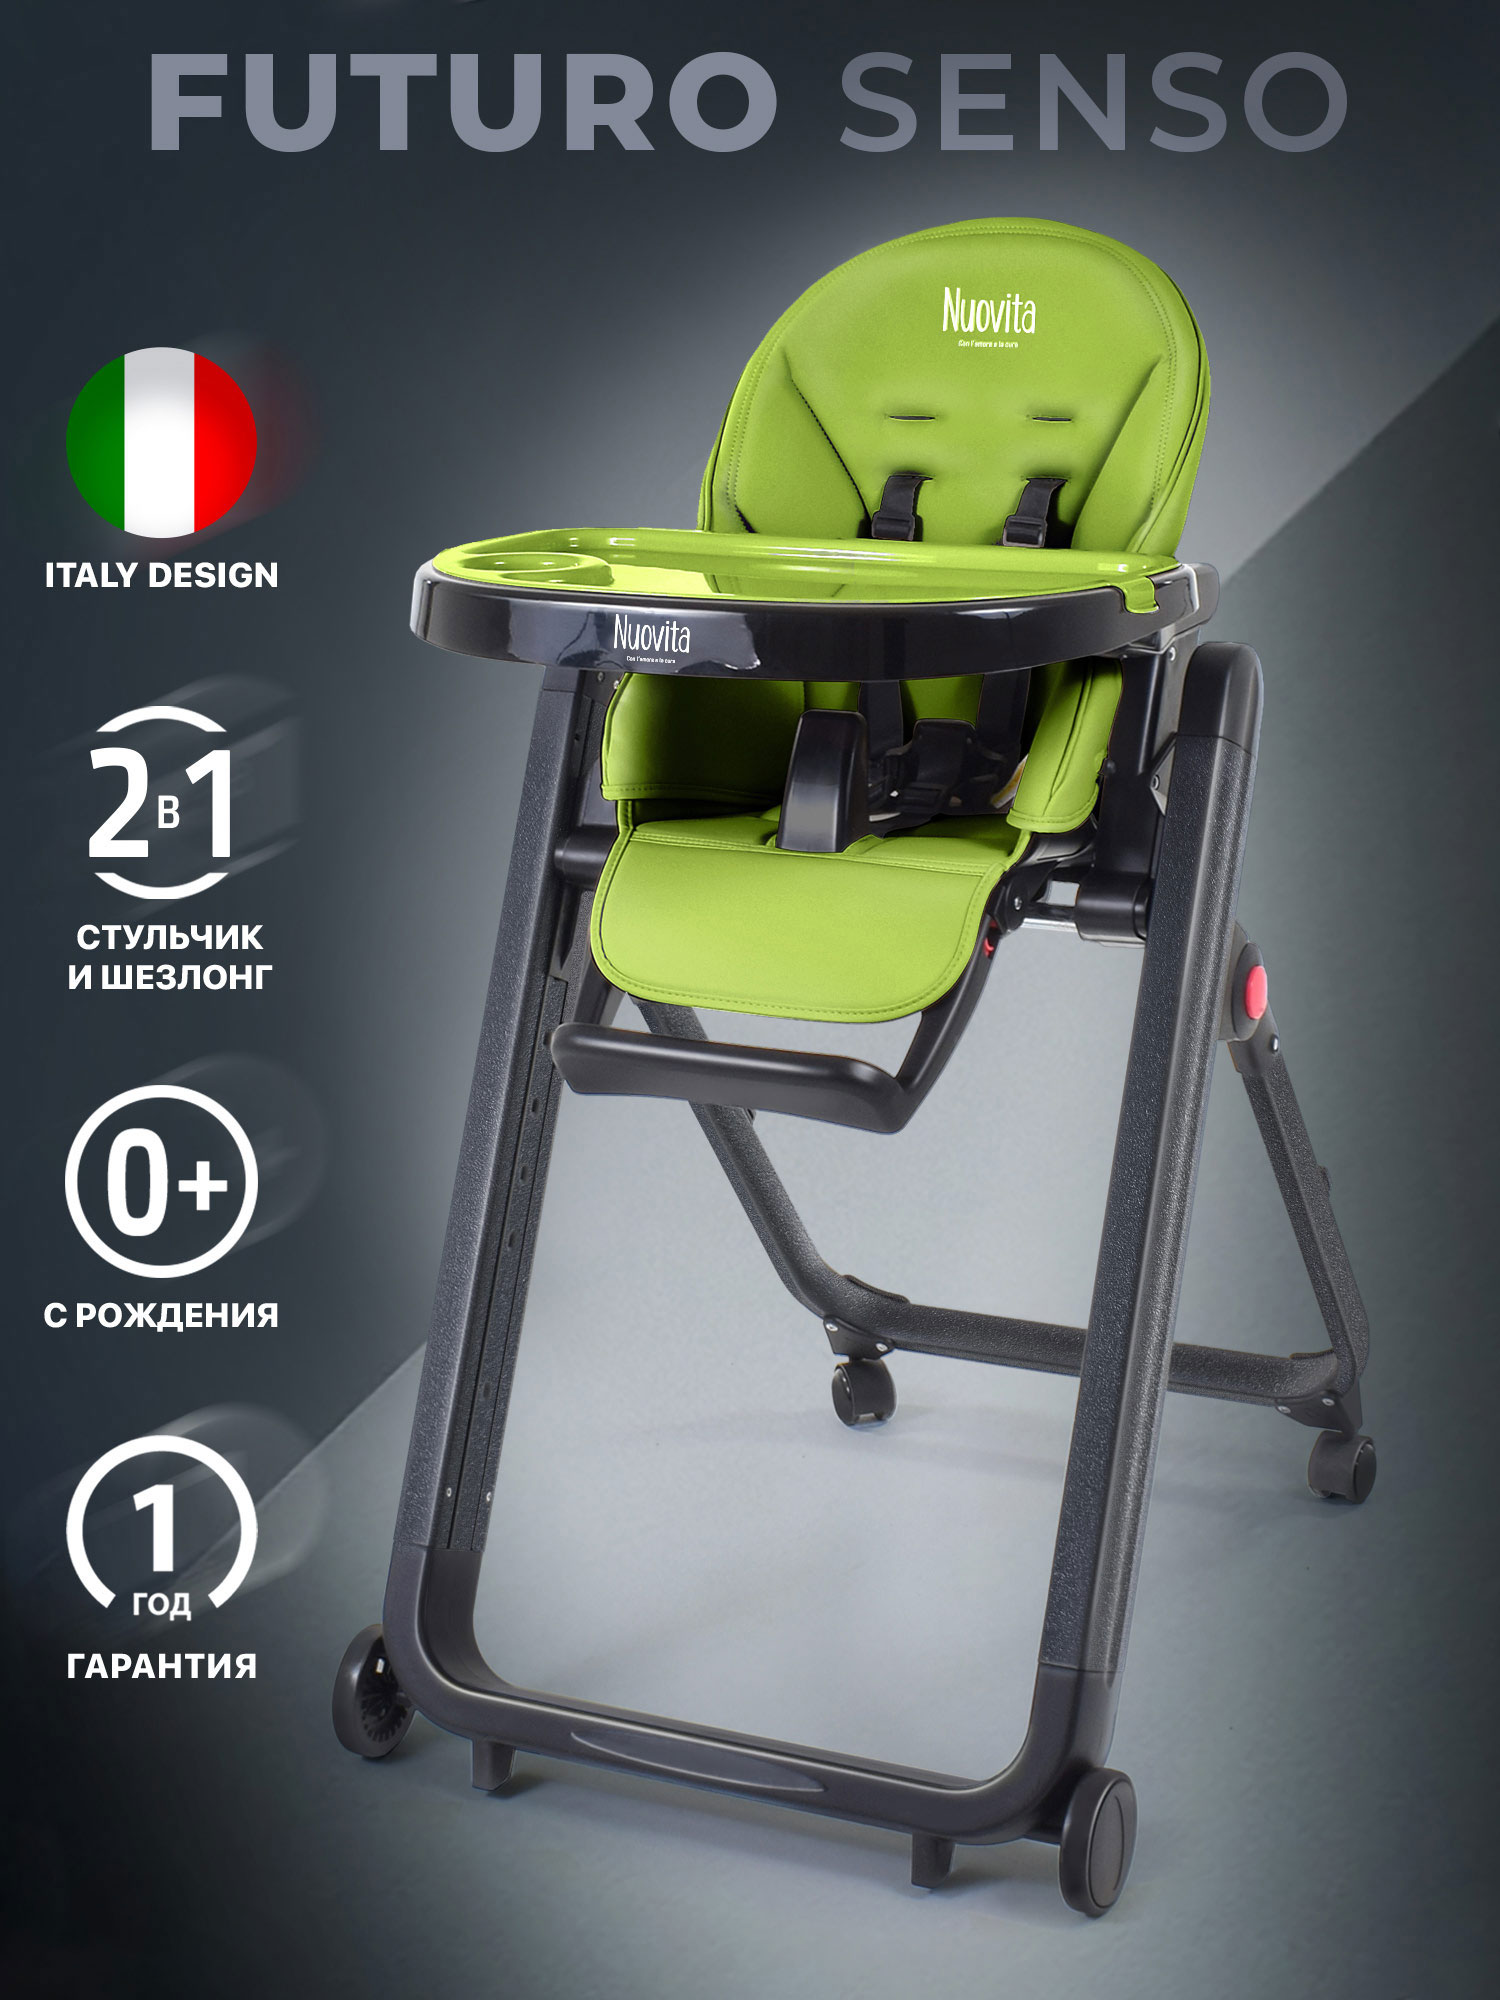 Стульчик для кормления Nuovita Futuro Senso Nero (Verde/Зеленый) стульчик для кормления nuovita grande nero